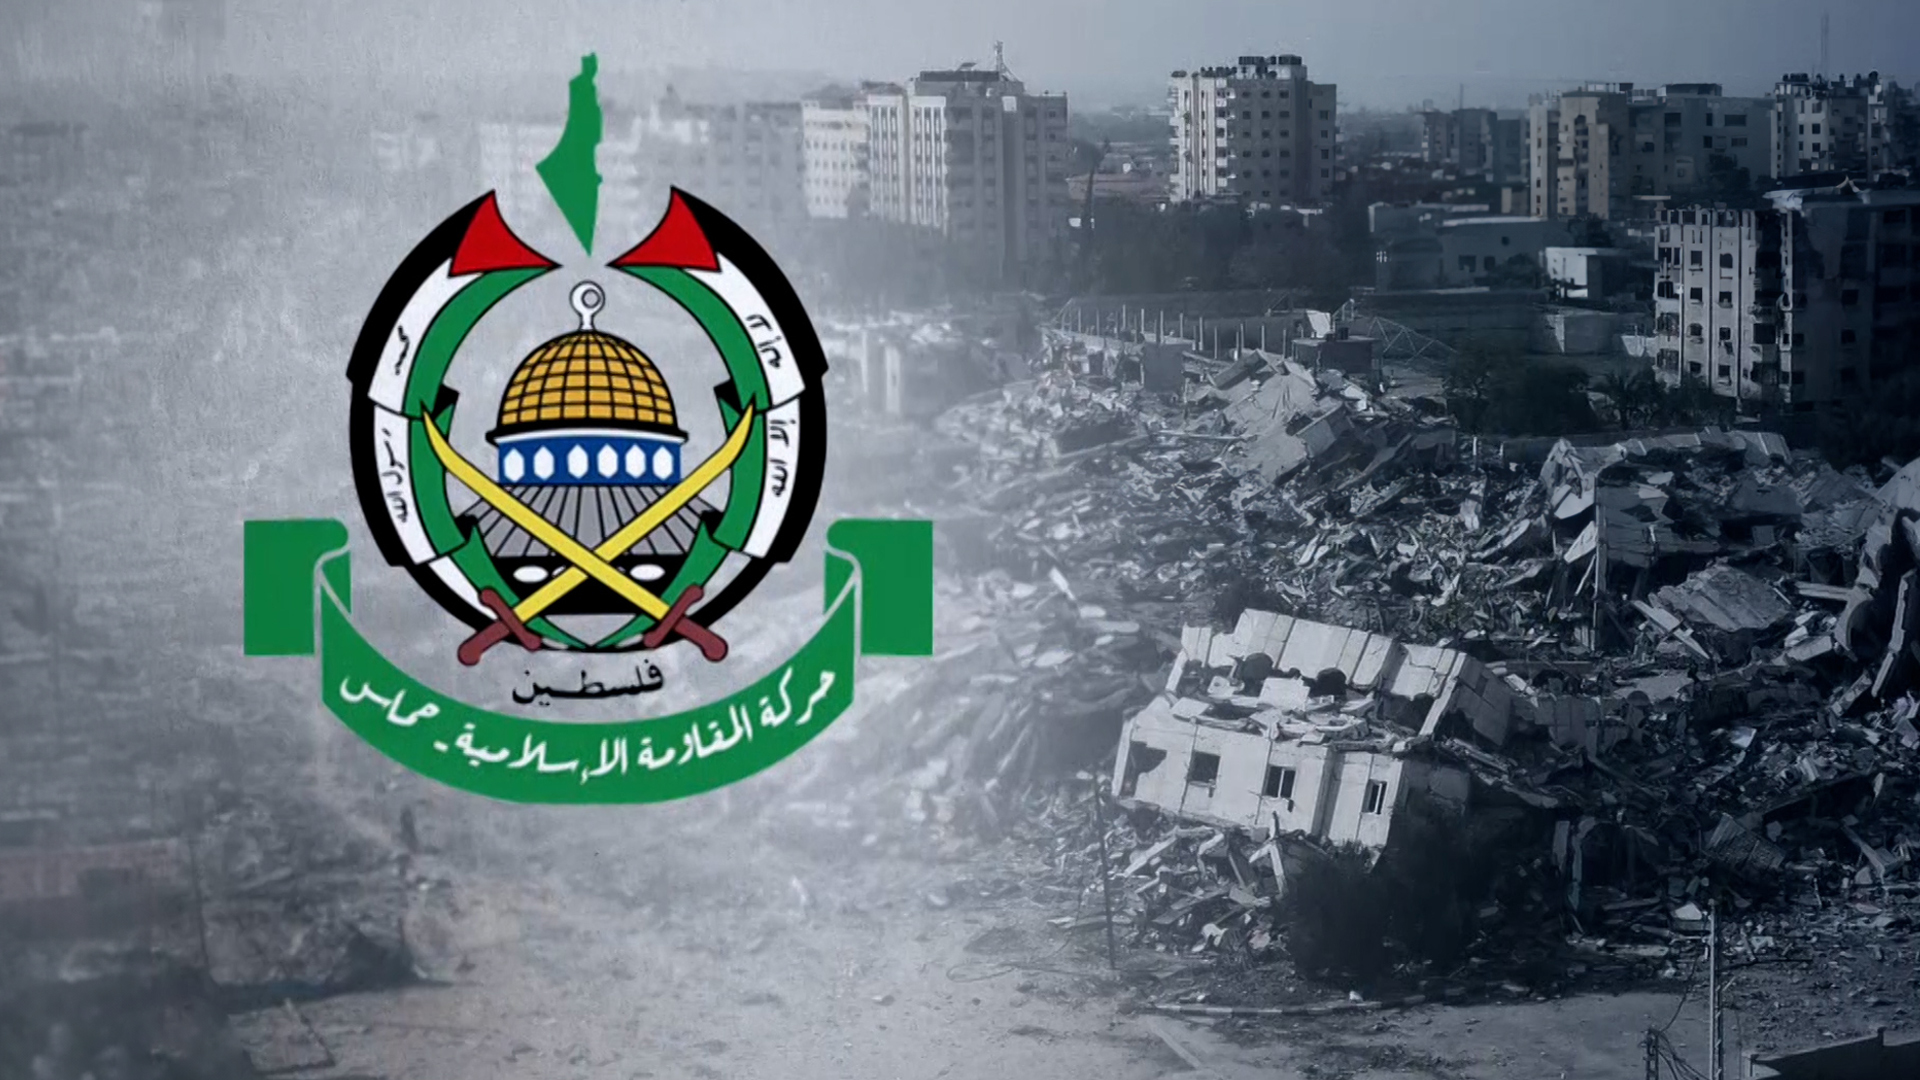 ما أبرز ما تضمنه رد حماس على مقترح التهدئة مع إسرائيل؟ | أخبار – البوكس نيوز